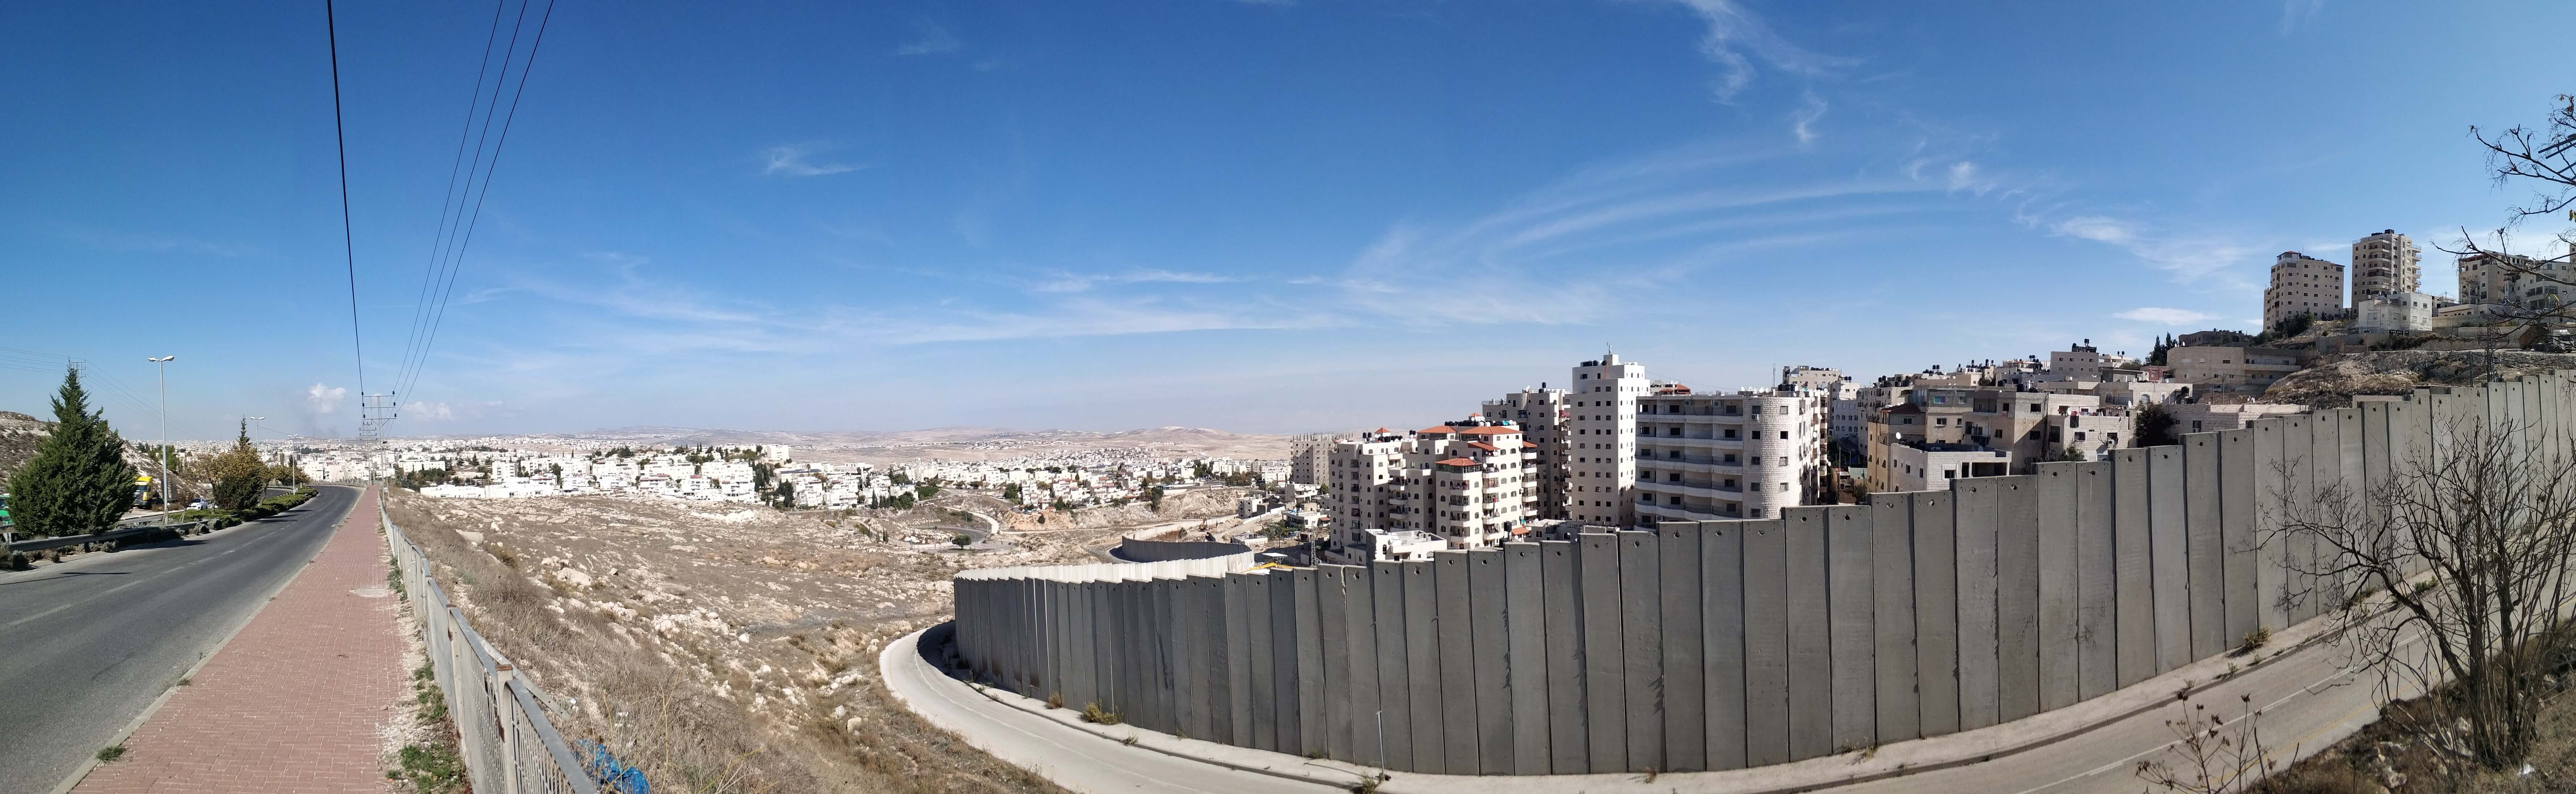 Mur w Izraelu